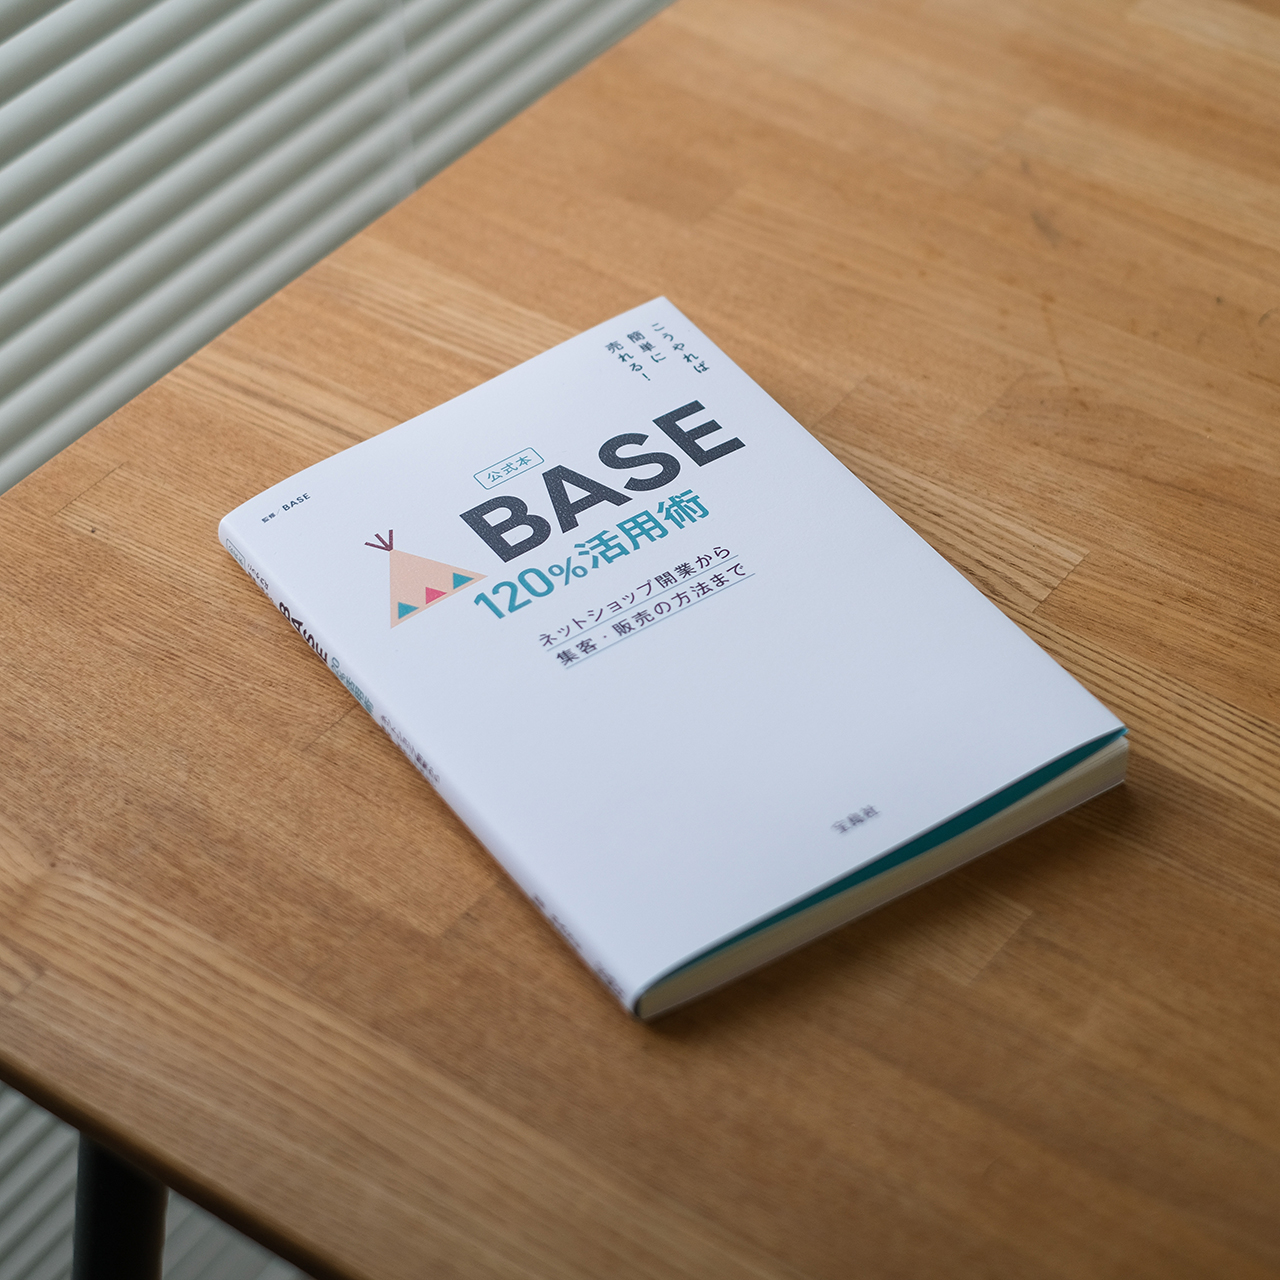 公式本BASE 120％活用術』にRIDGE MOUNTAIN GEARが掲載されています。